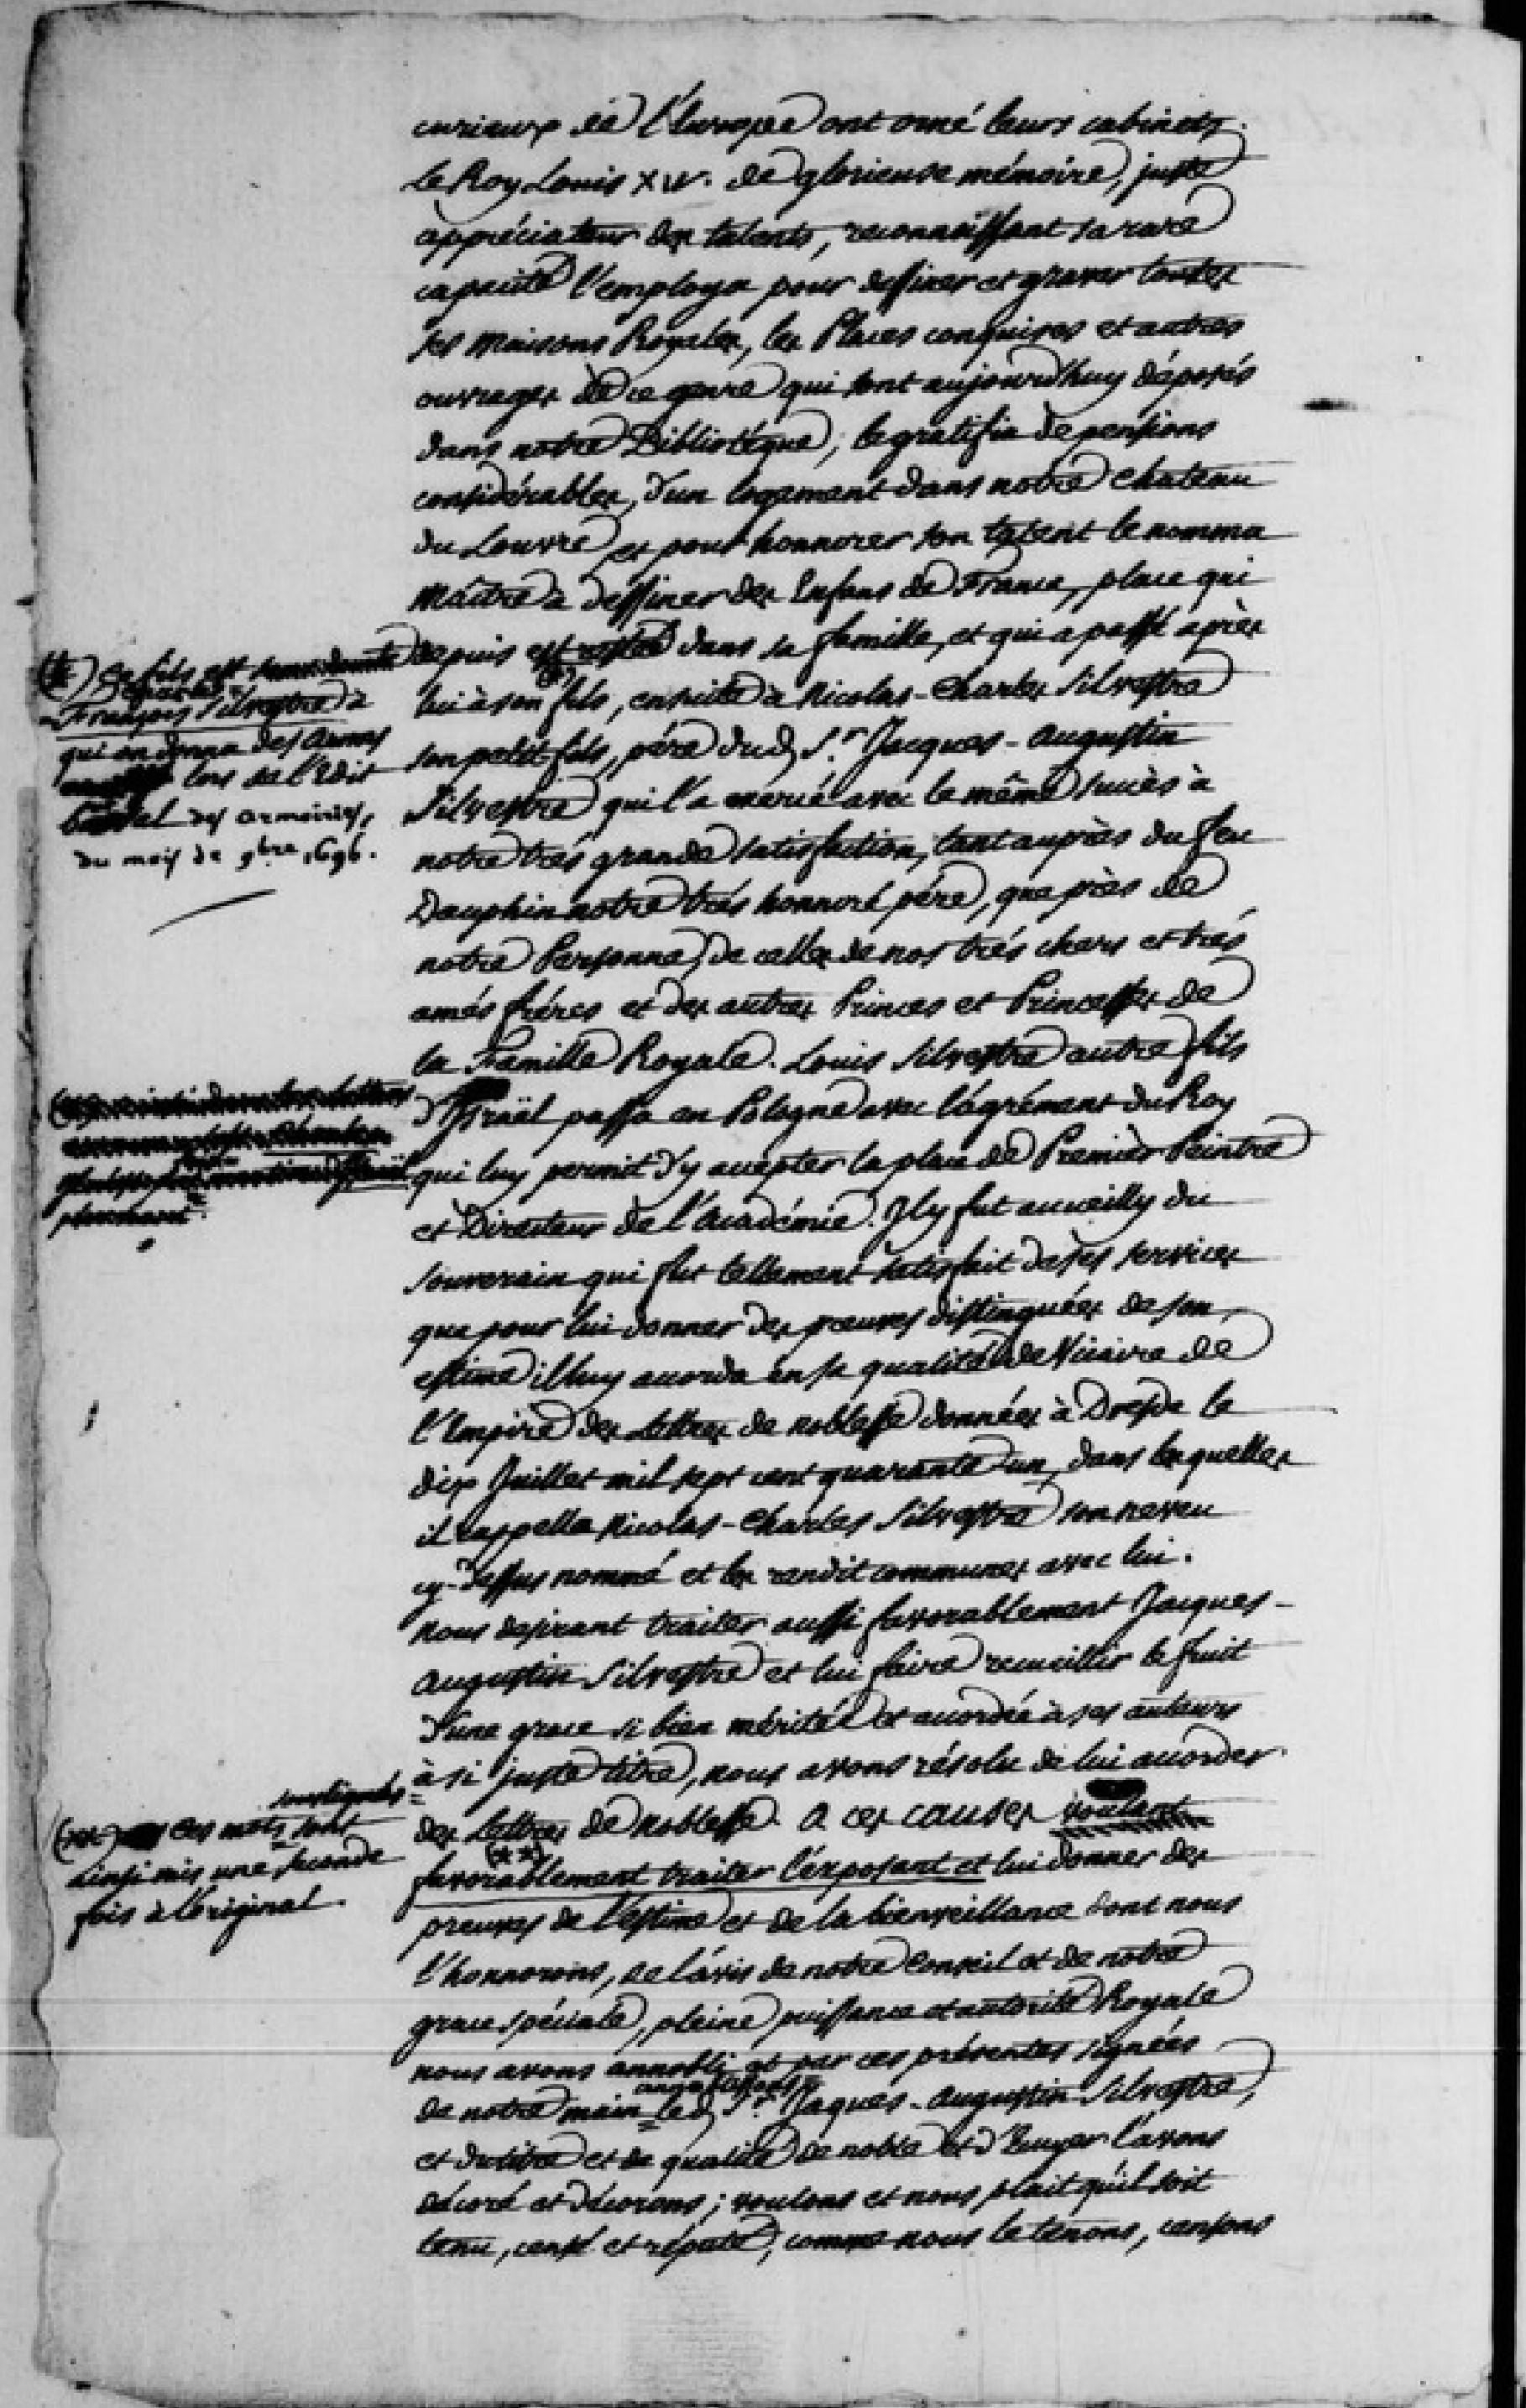  Lettres de noblesse pour Jacques Augustin de Silvestre - Page 2